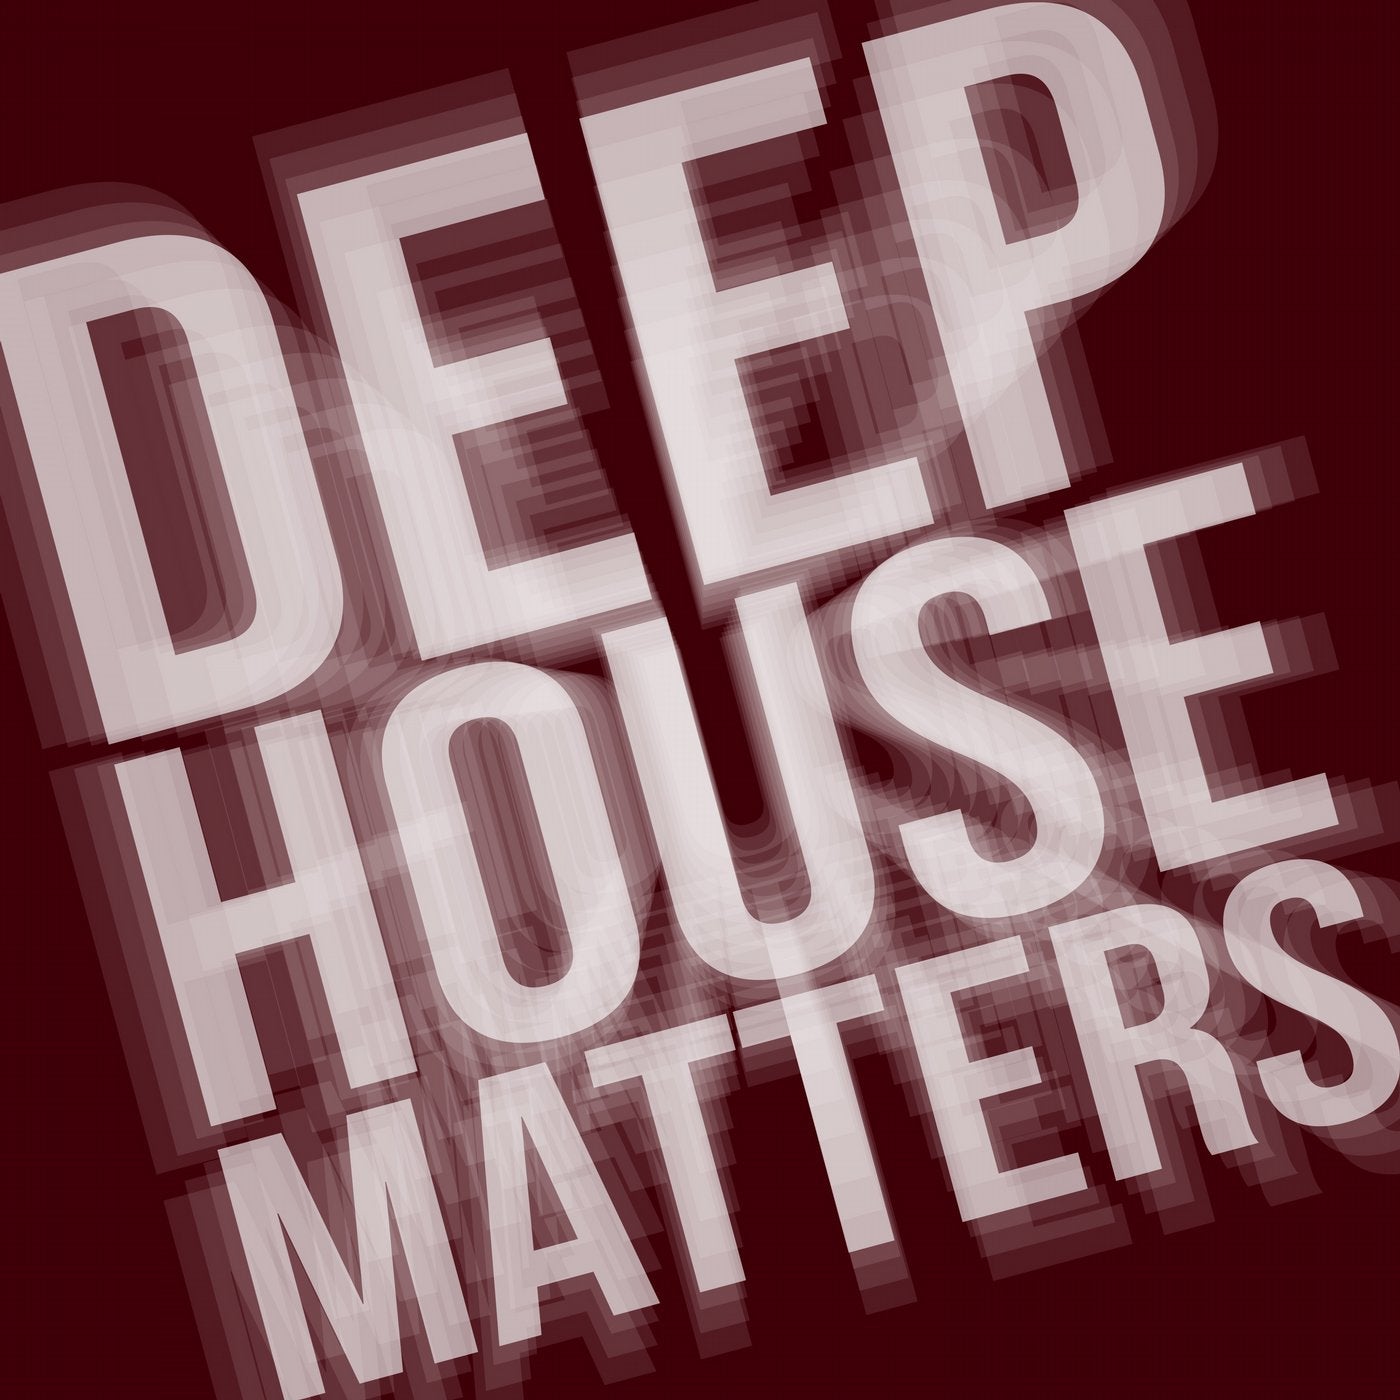 Deep House Matters